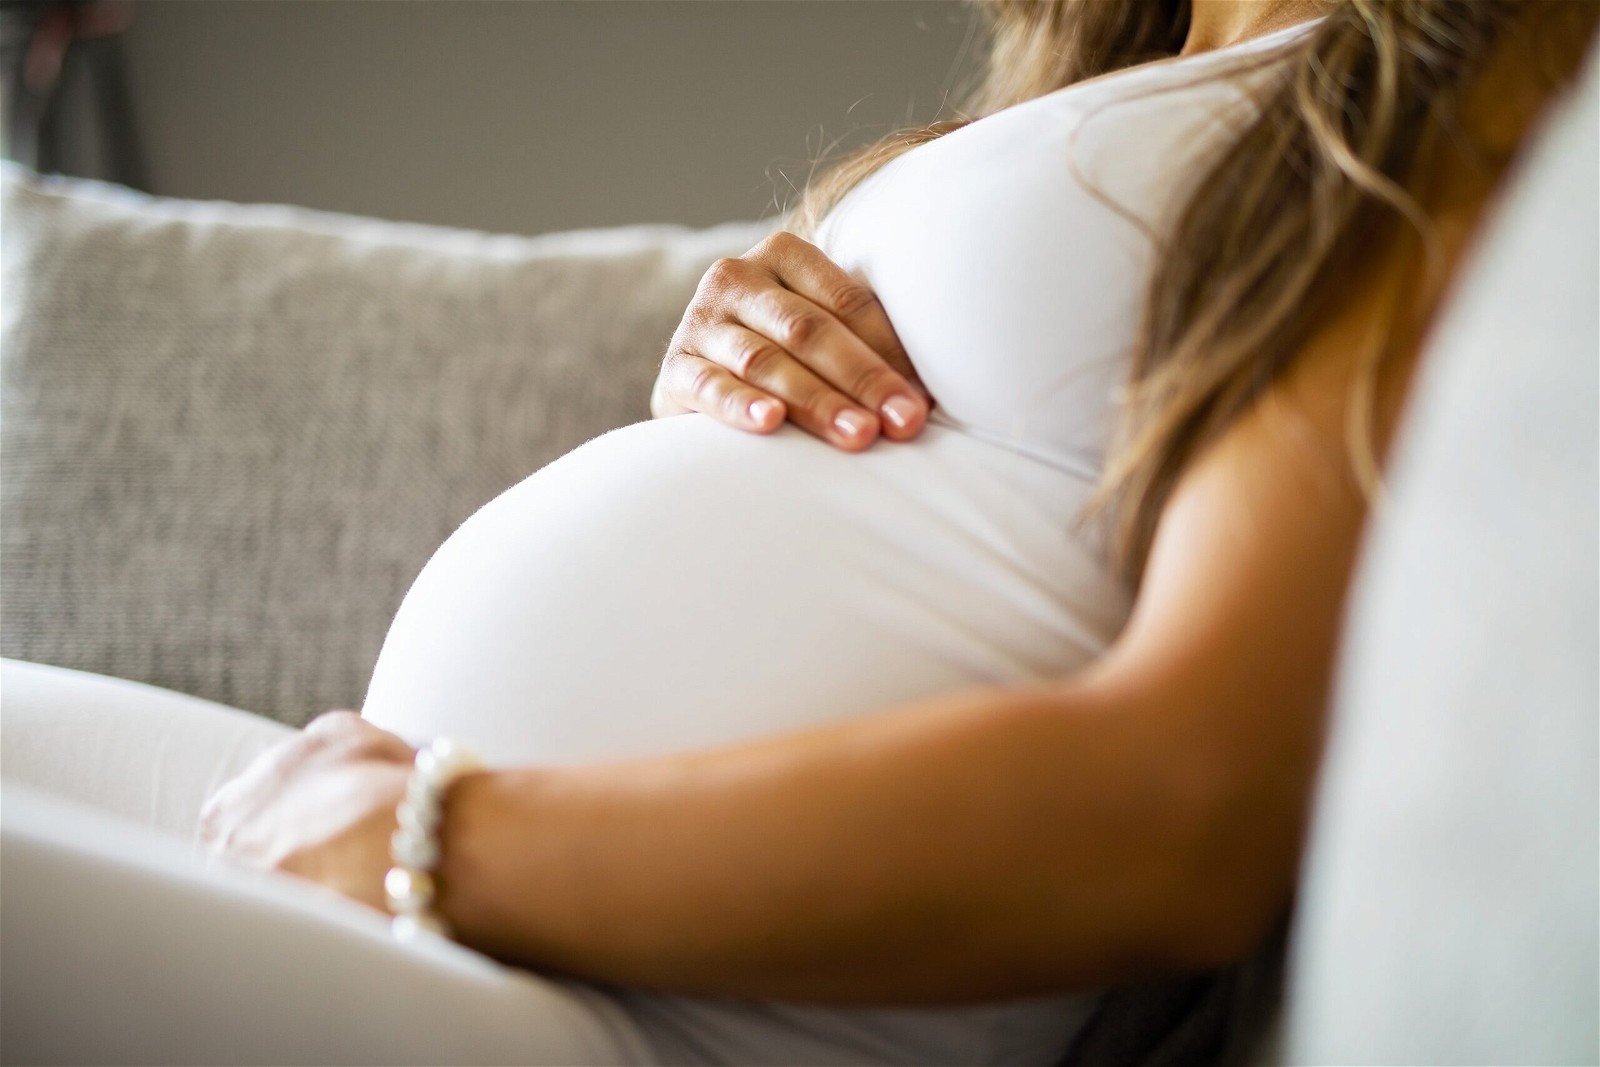 Không được tự ý sử dụng Baby Septol cho phụ nữ có thai do có thể ảnh hưởng xấu đến thai nhi